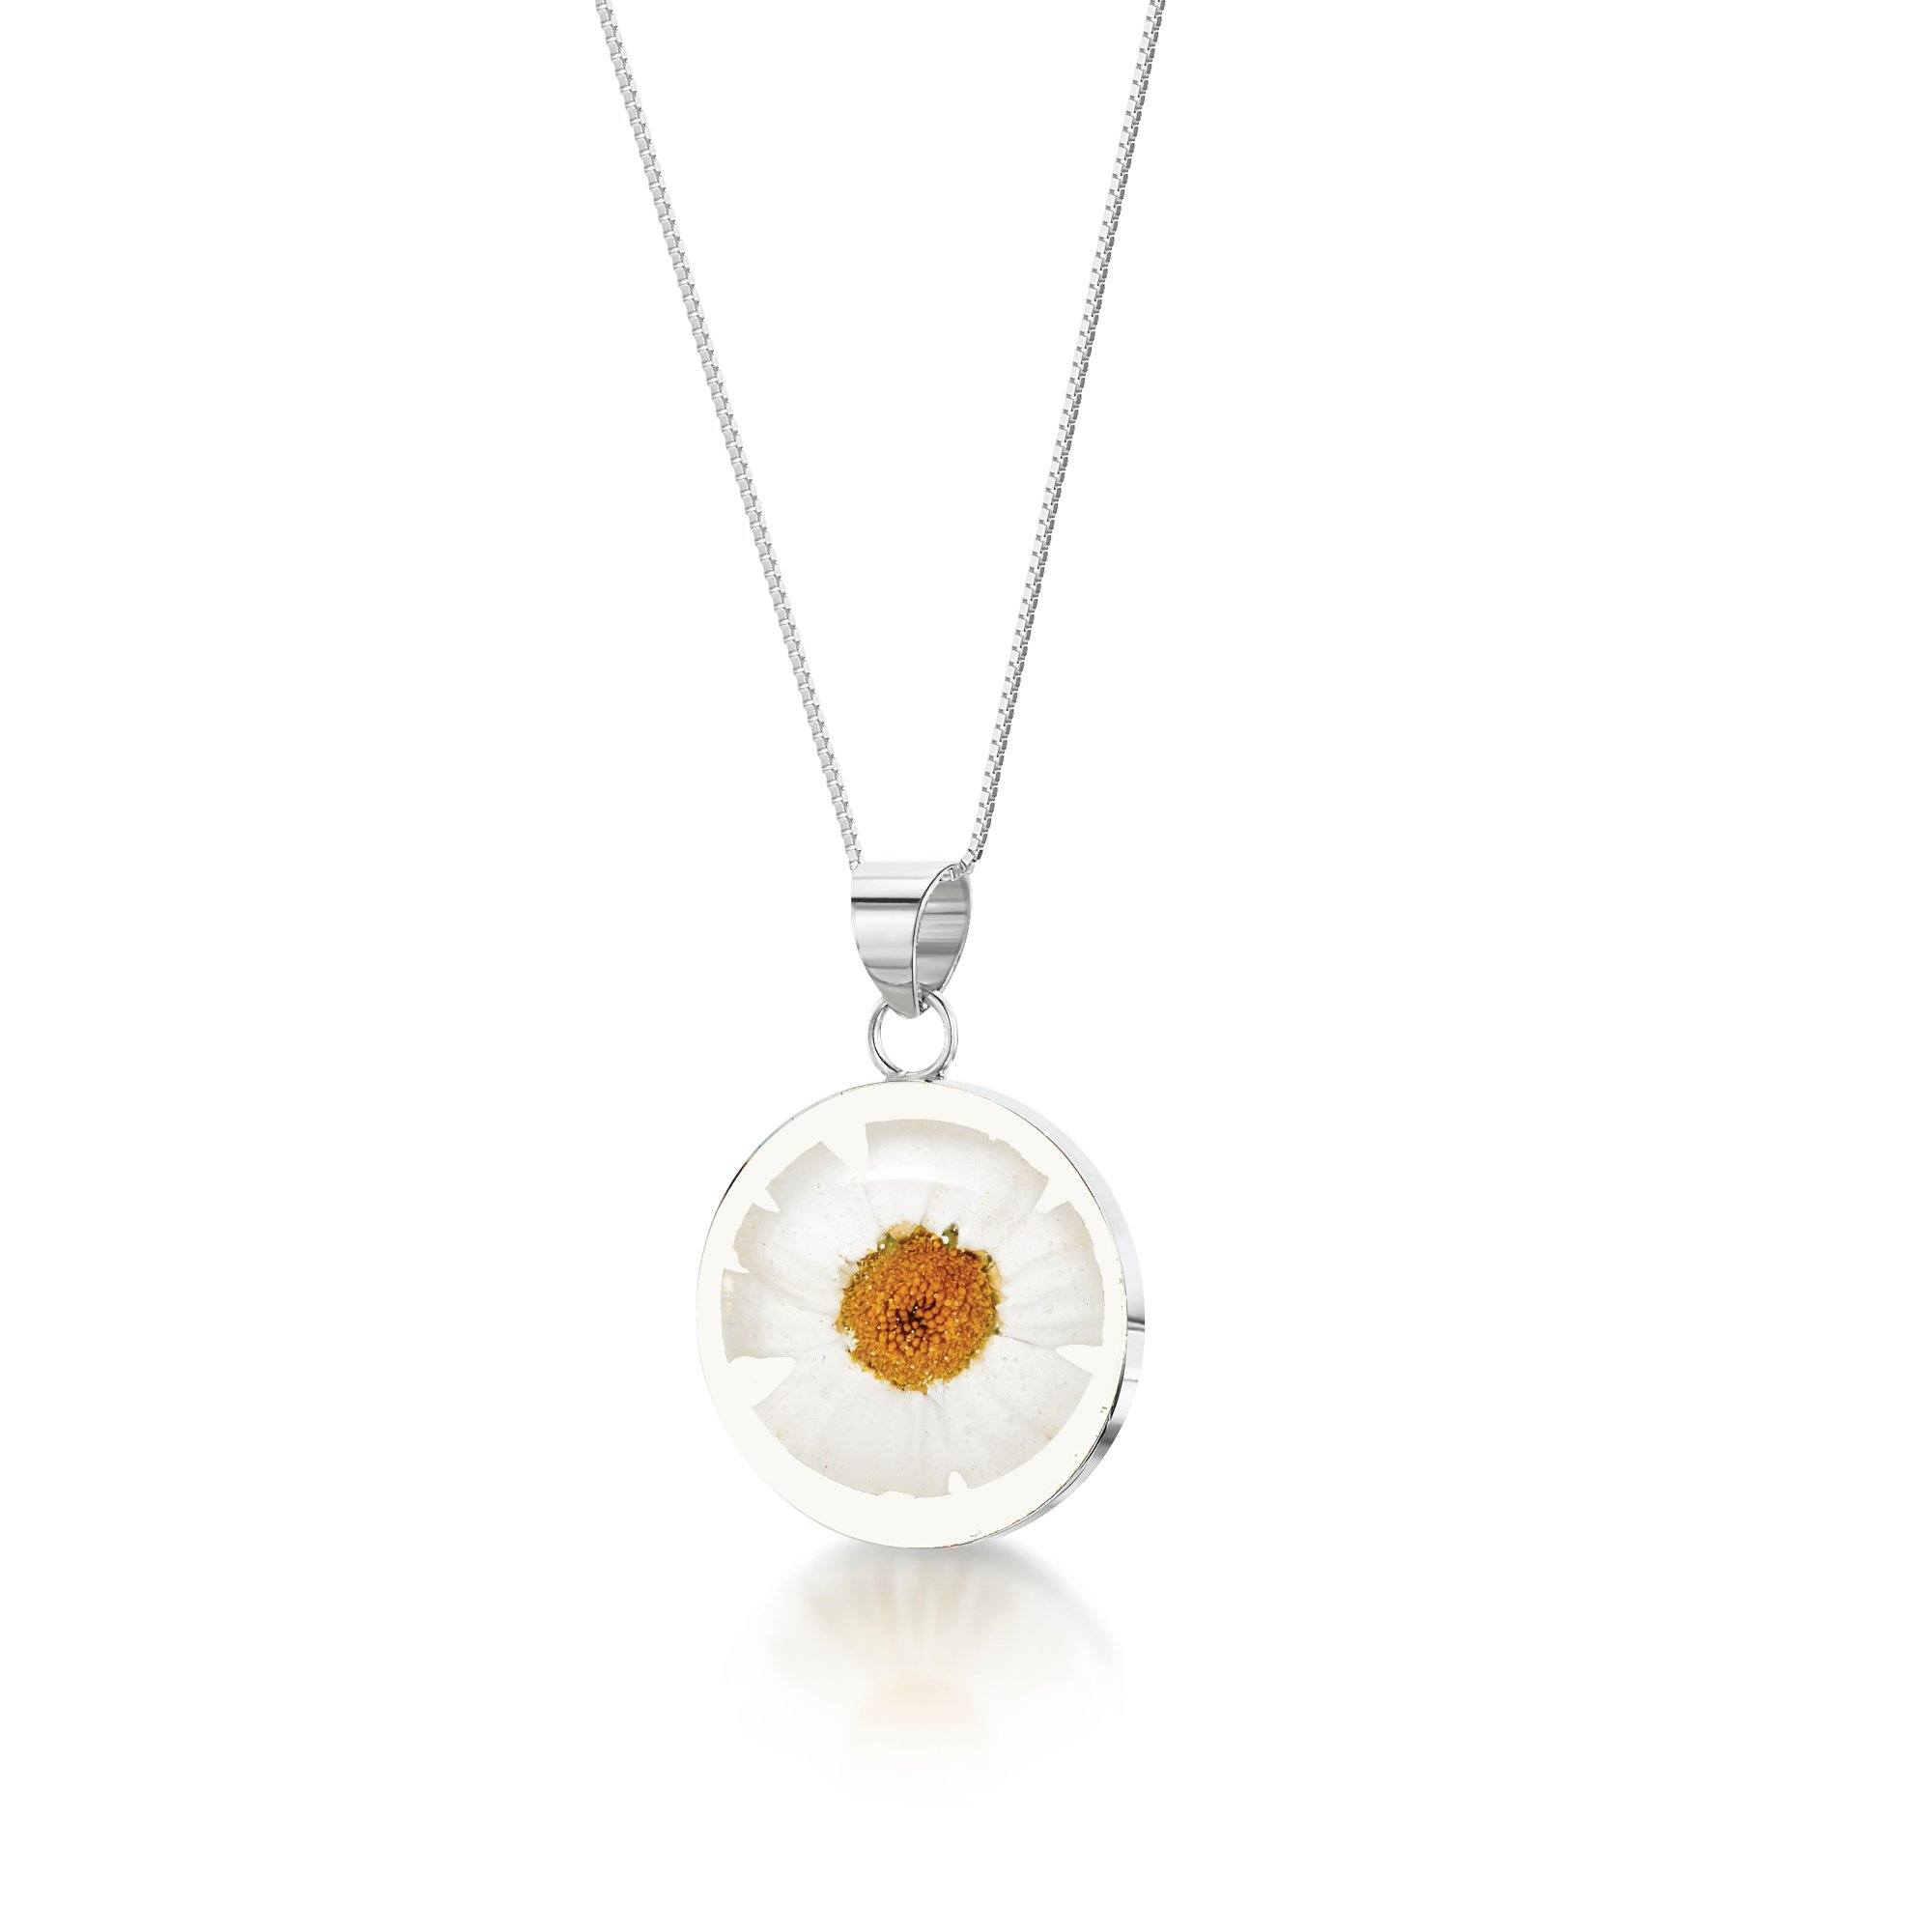 Real Daisy Flower Necklace Necklaces & Pendants Shrieking Violet 